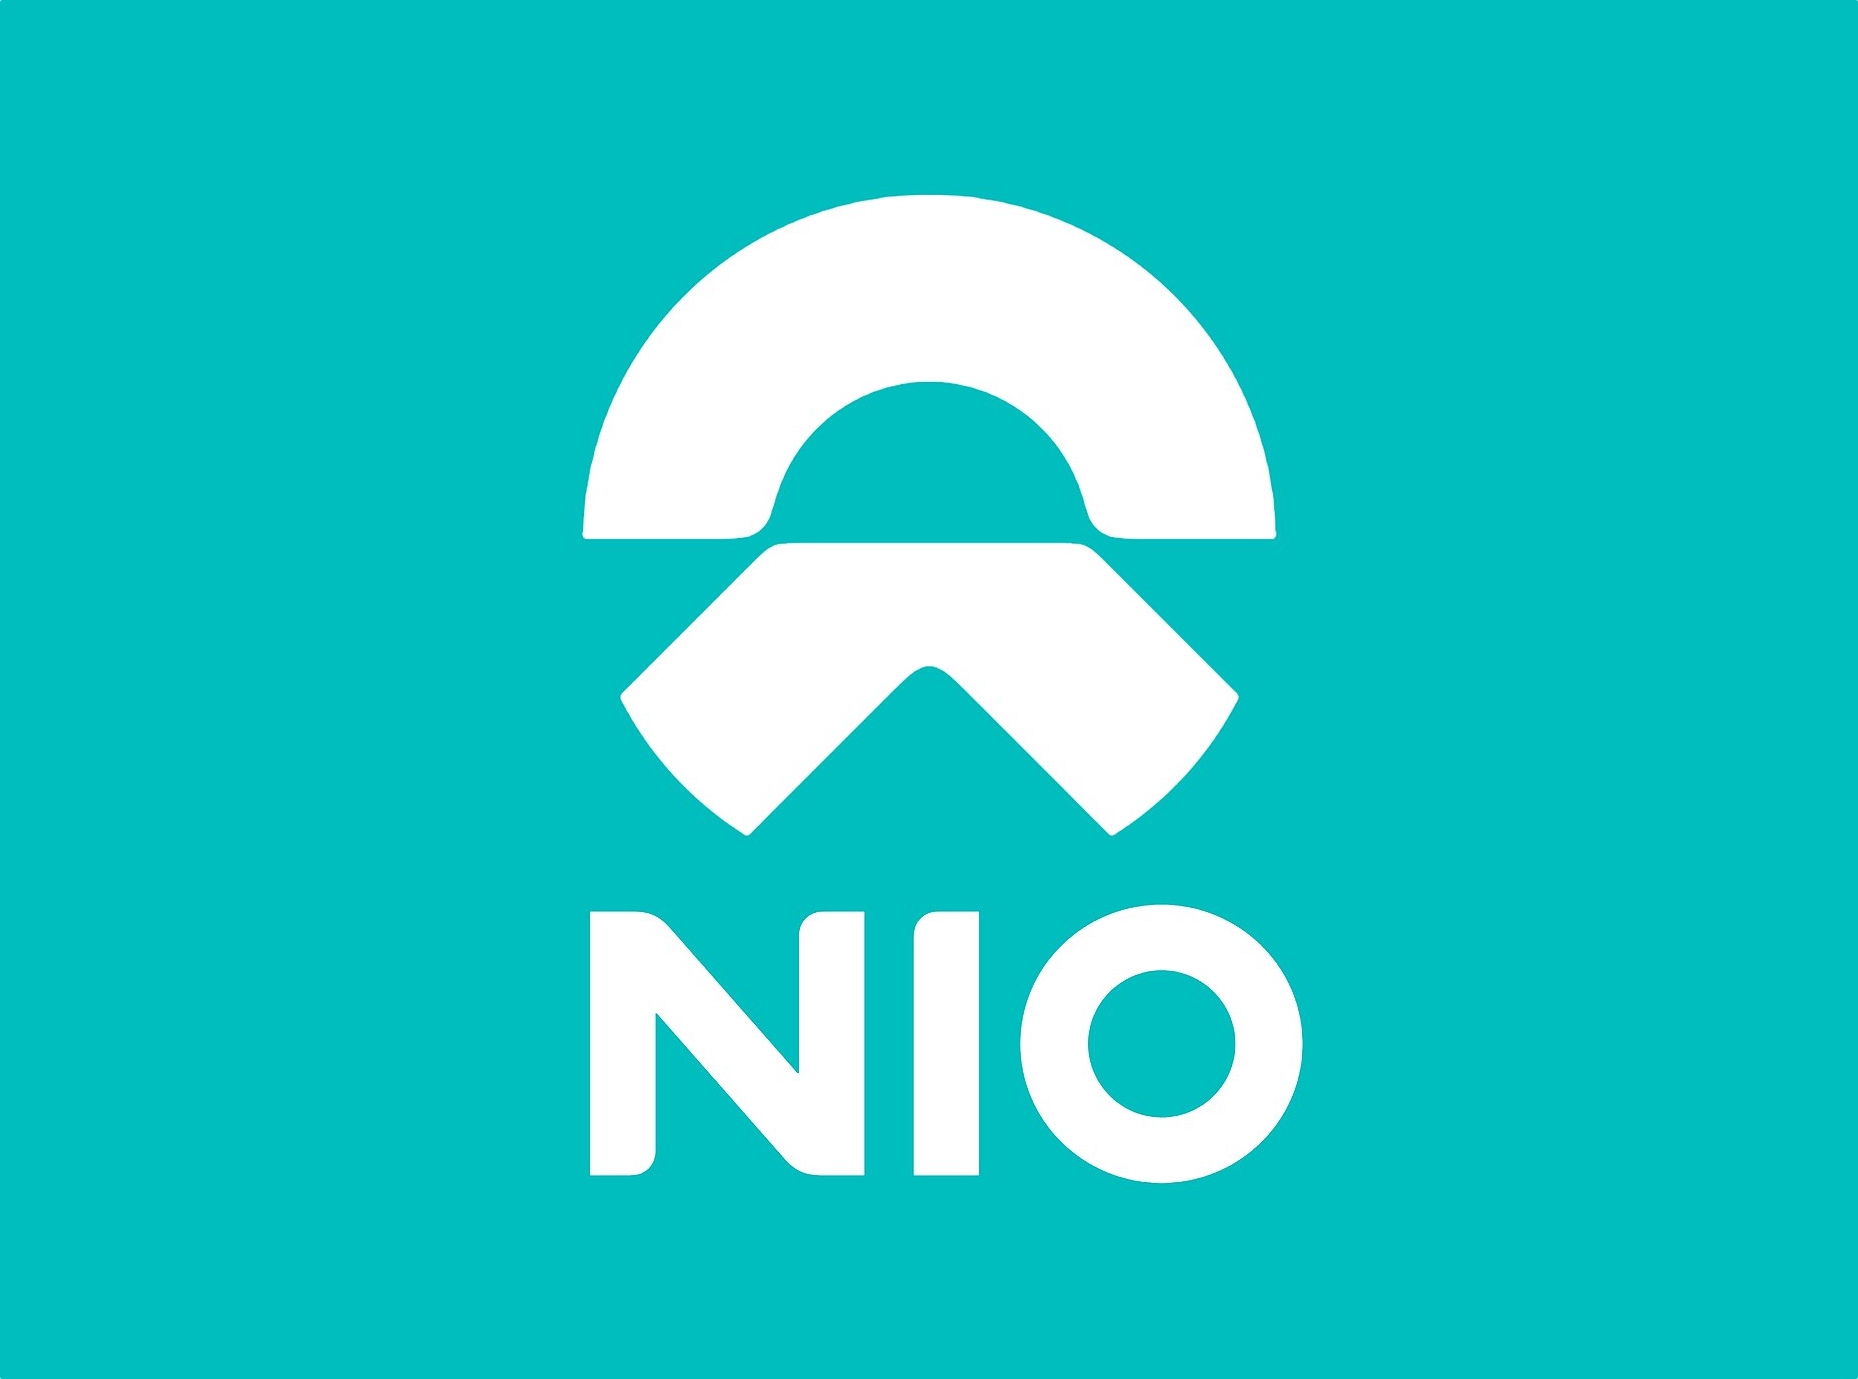 Der chinesische Elektroautohersteller Nio will Smartphones produzieren, die erste Neuheit könnte 2023 auf den Markt kommen